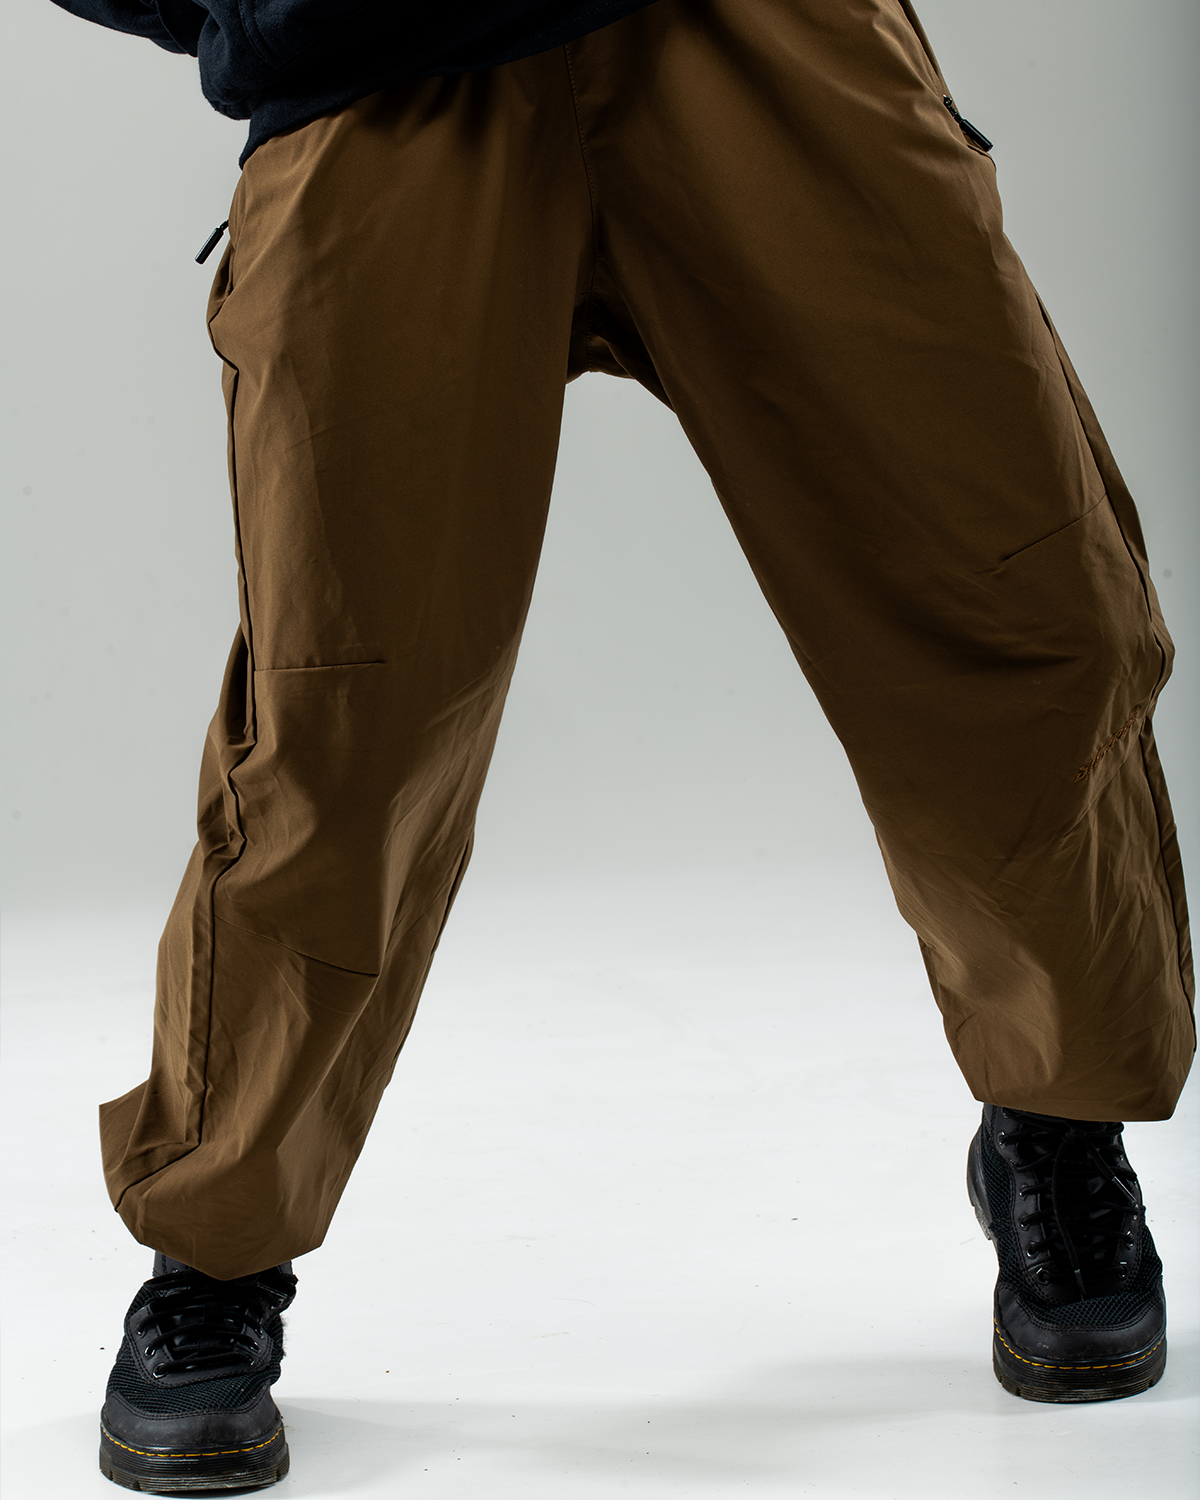 cotton trousers parkour training pants hip-hop pants - AliExpress